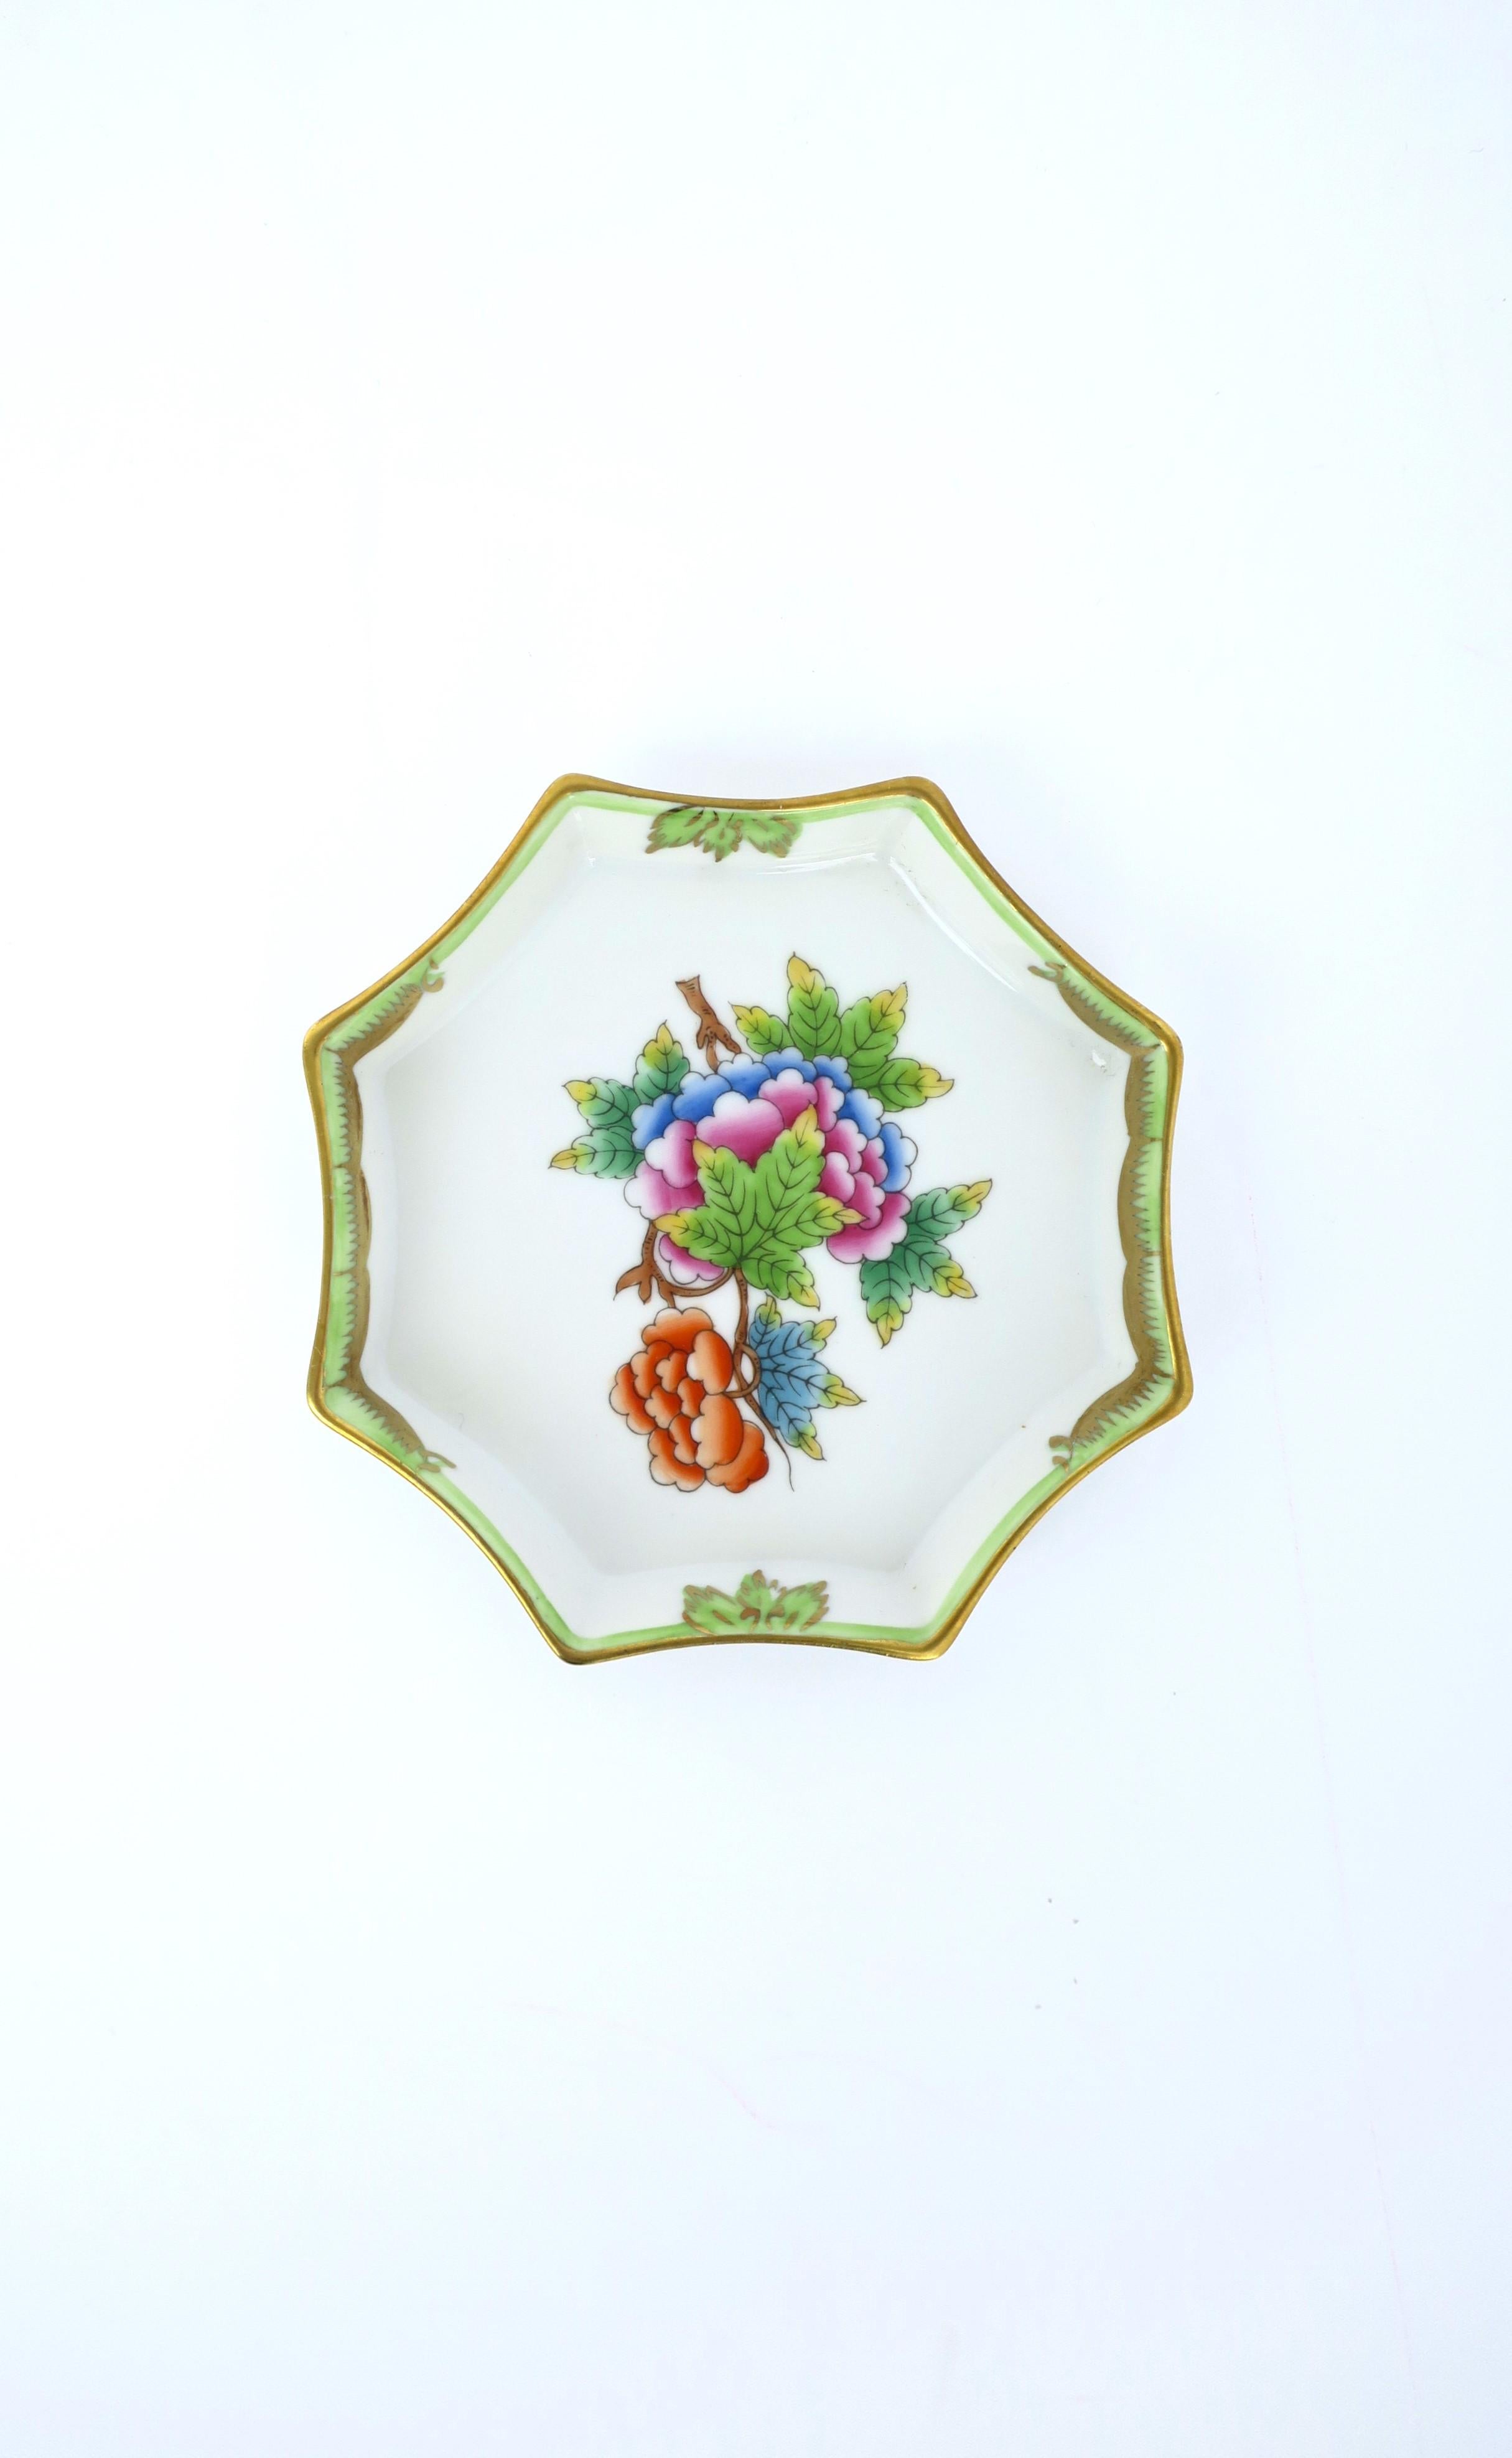 Très beau vide-poche octogonal en porcelaine peint à la main de la maison de luxe Herend, vers le 20e siècle, Hongrie. Le plat est de forme octogonale avec un design de la Reine Victoria, un centre floral et de feuilles et un bord décoratif fini en